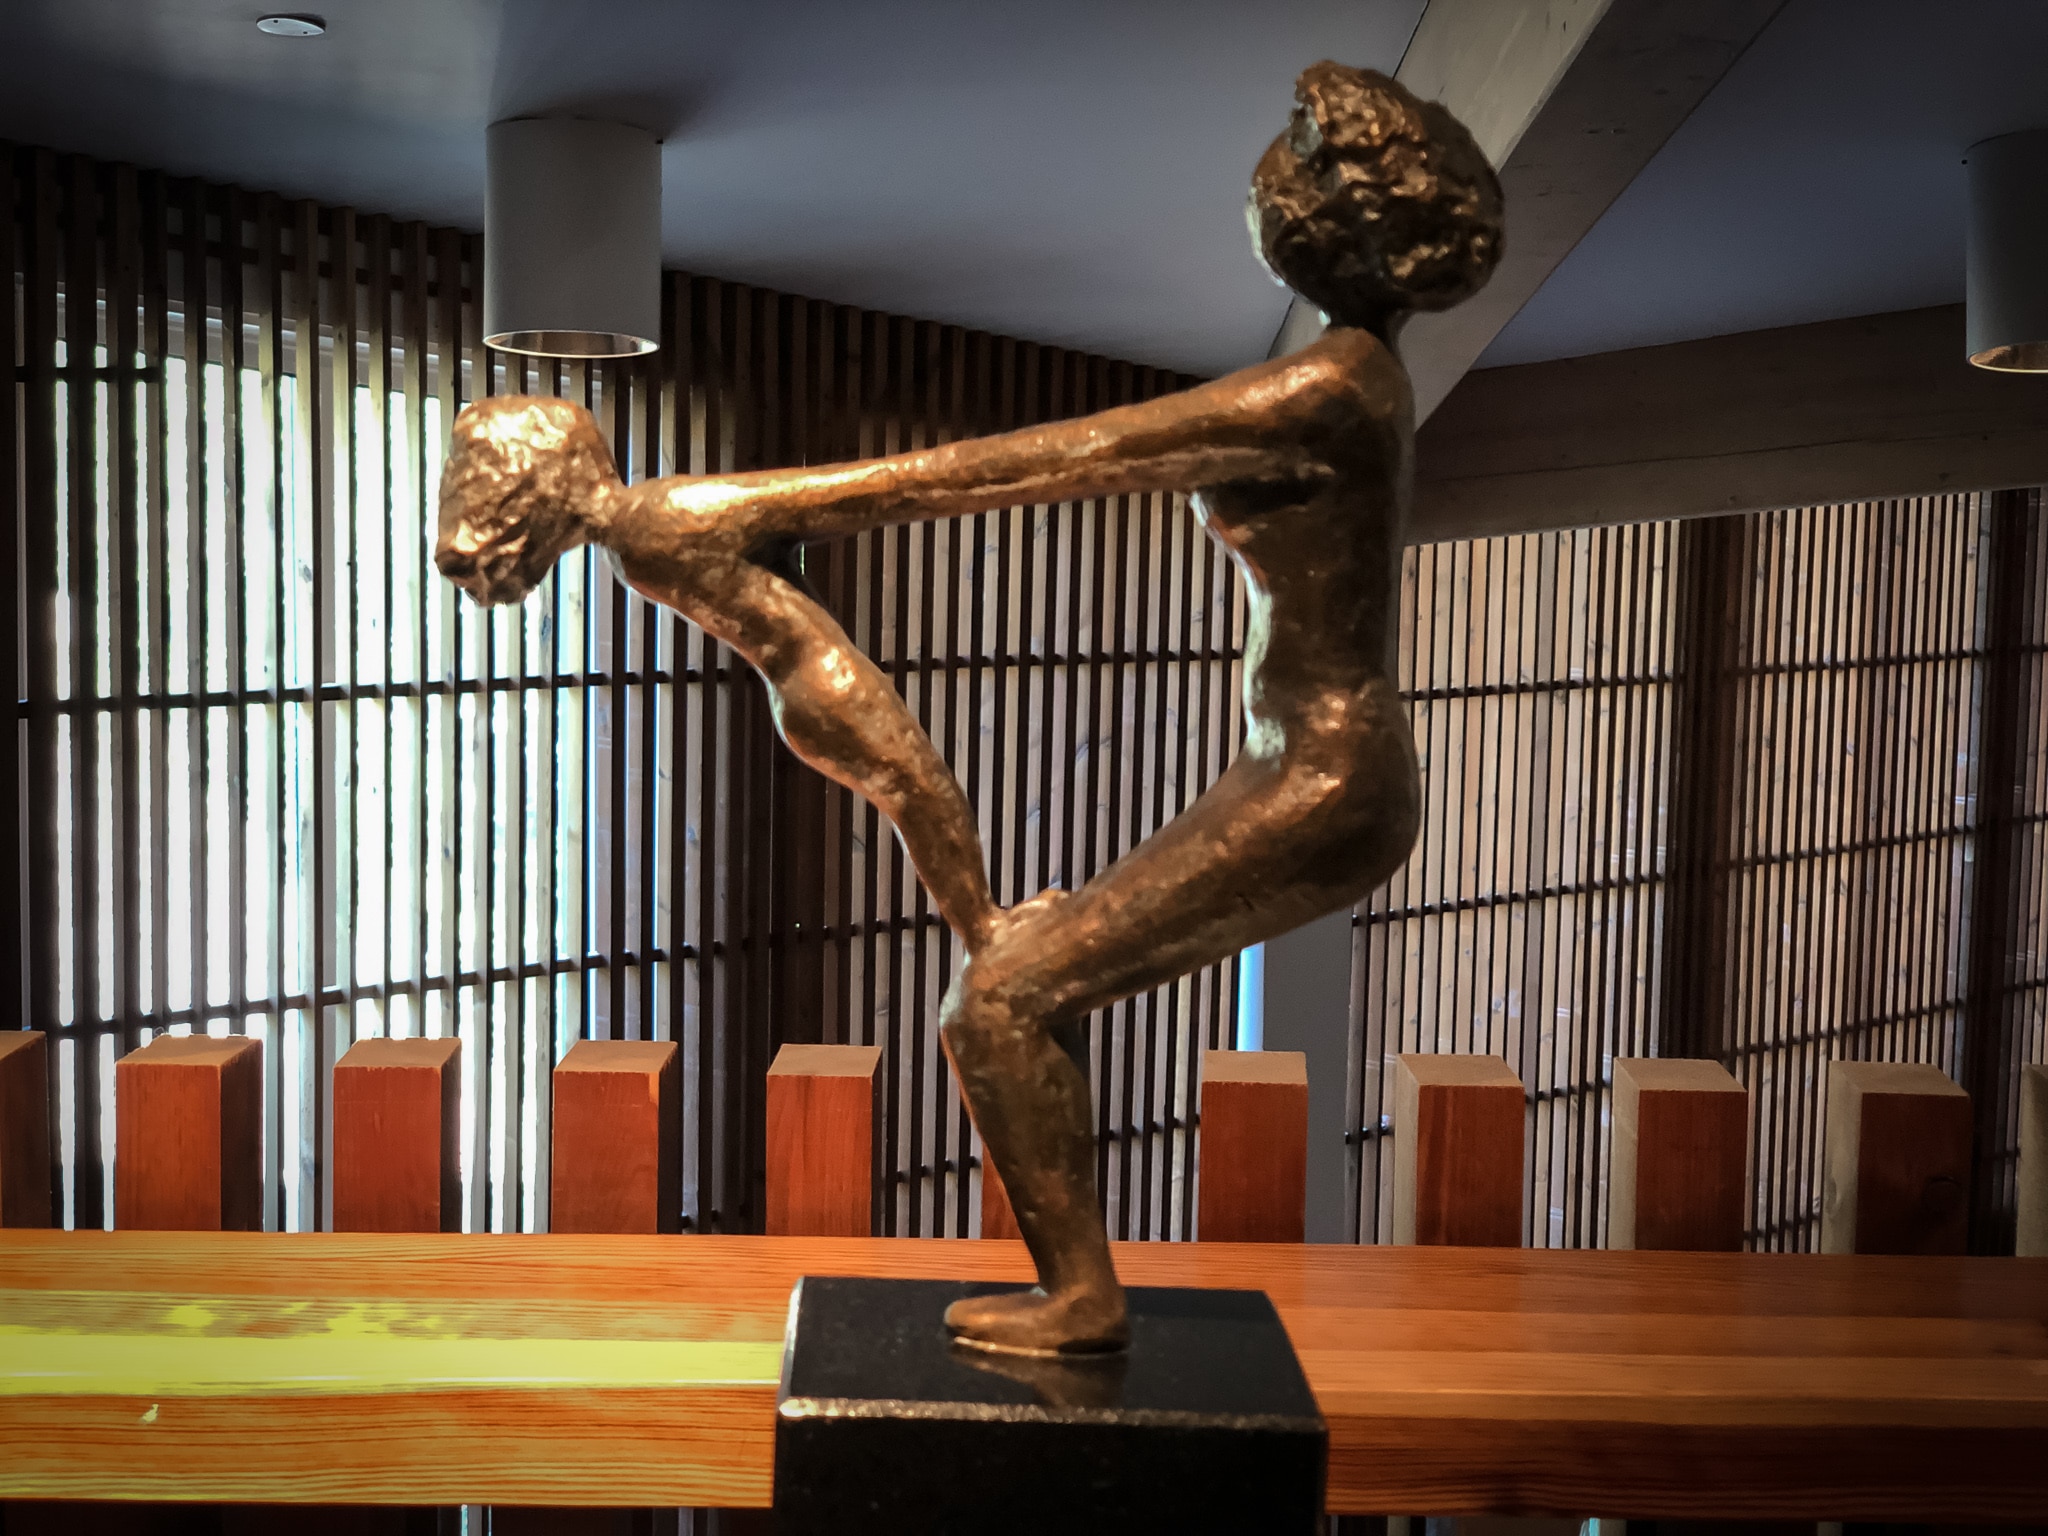 utstallningar konst brons vann spa hotell och konferens